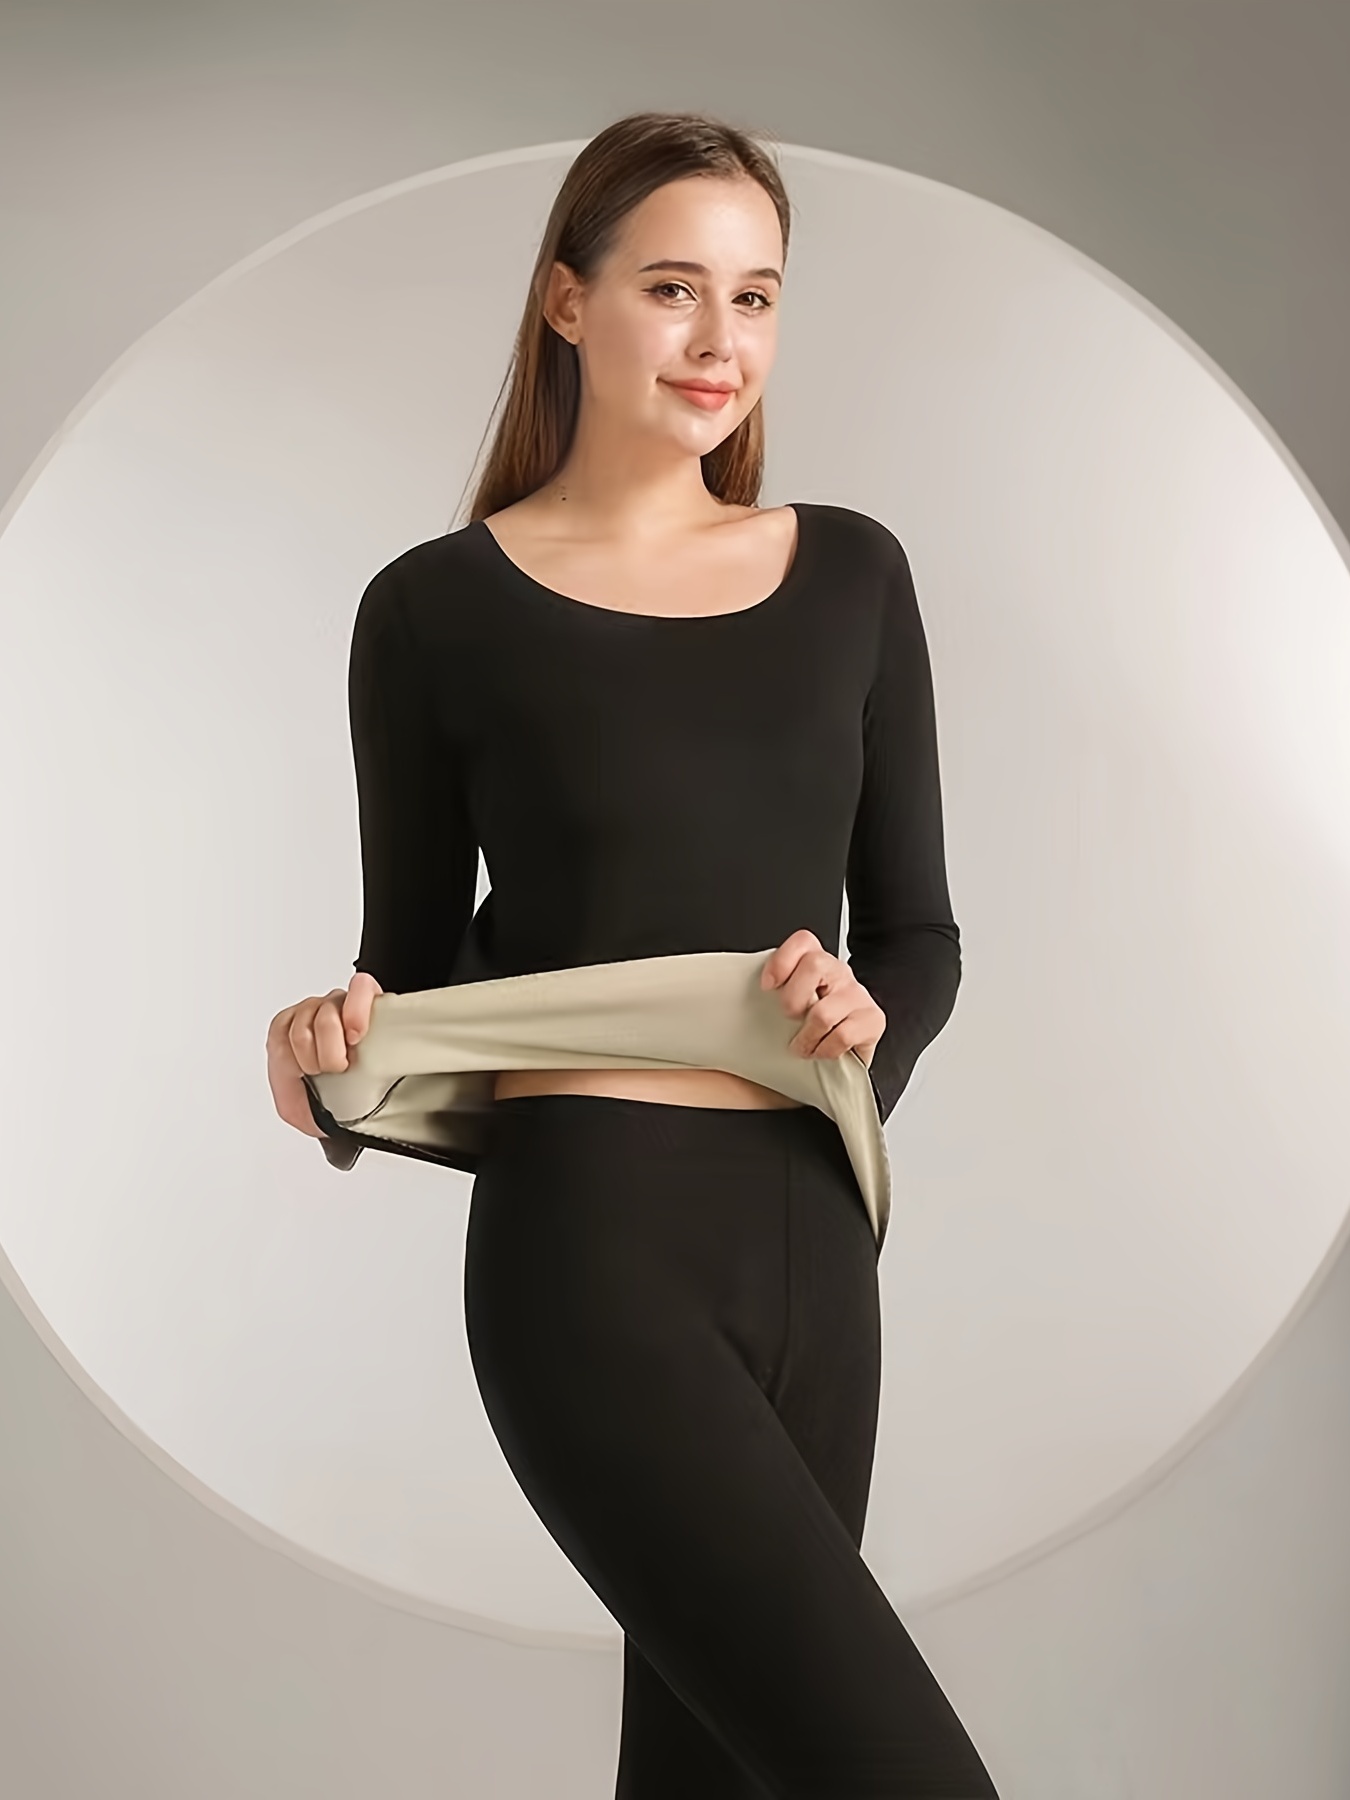 ropa interior termica mujer – Compra ropa interior termica mujer con envío  gratis en AliExpress version